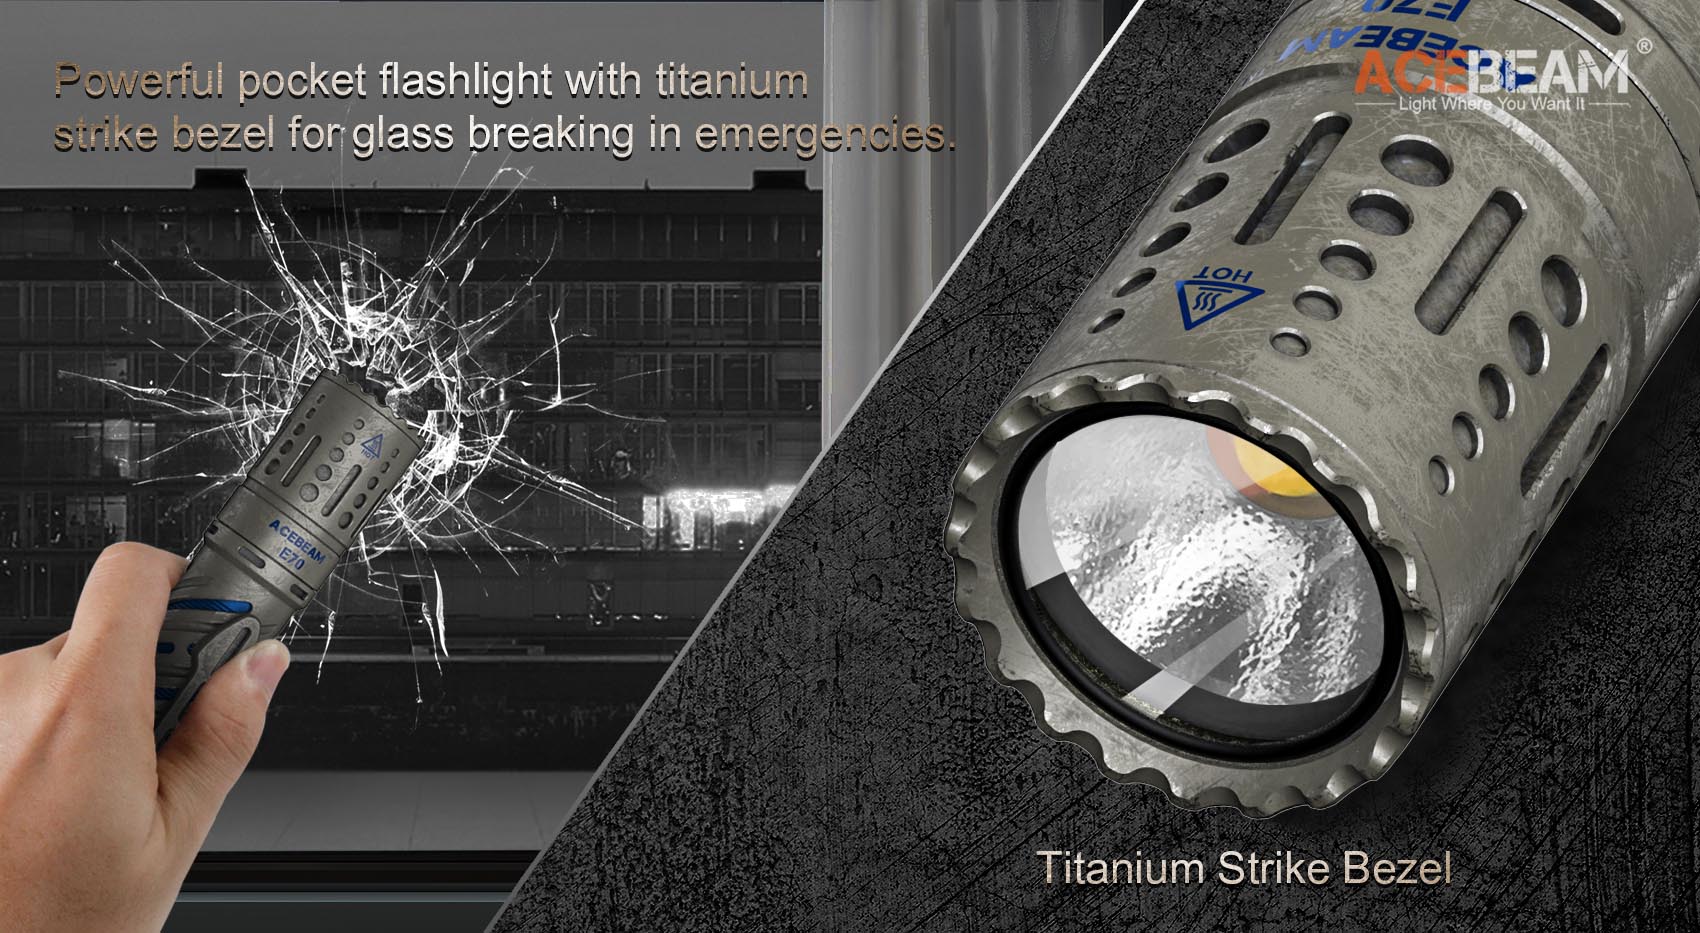 E70-TI EDC Flashlight, AceBeam® Official Store